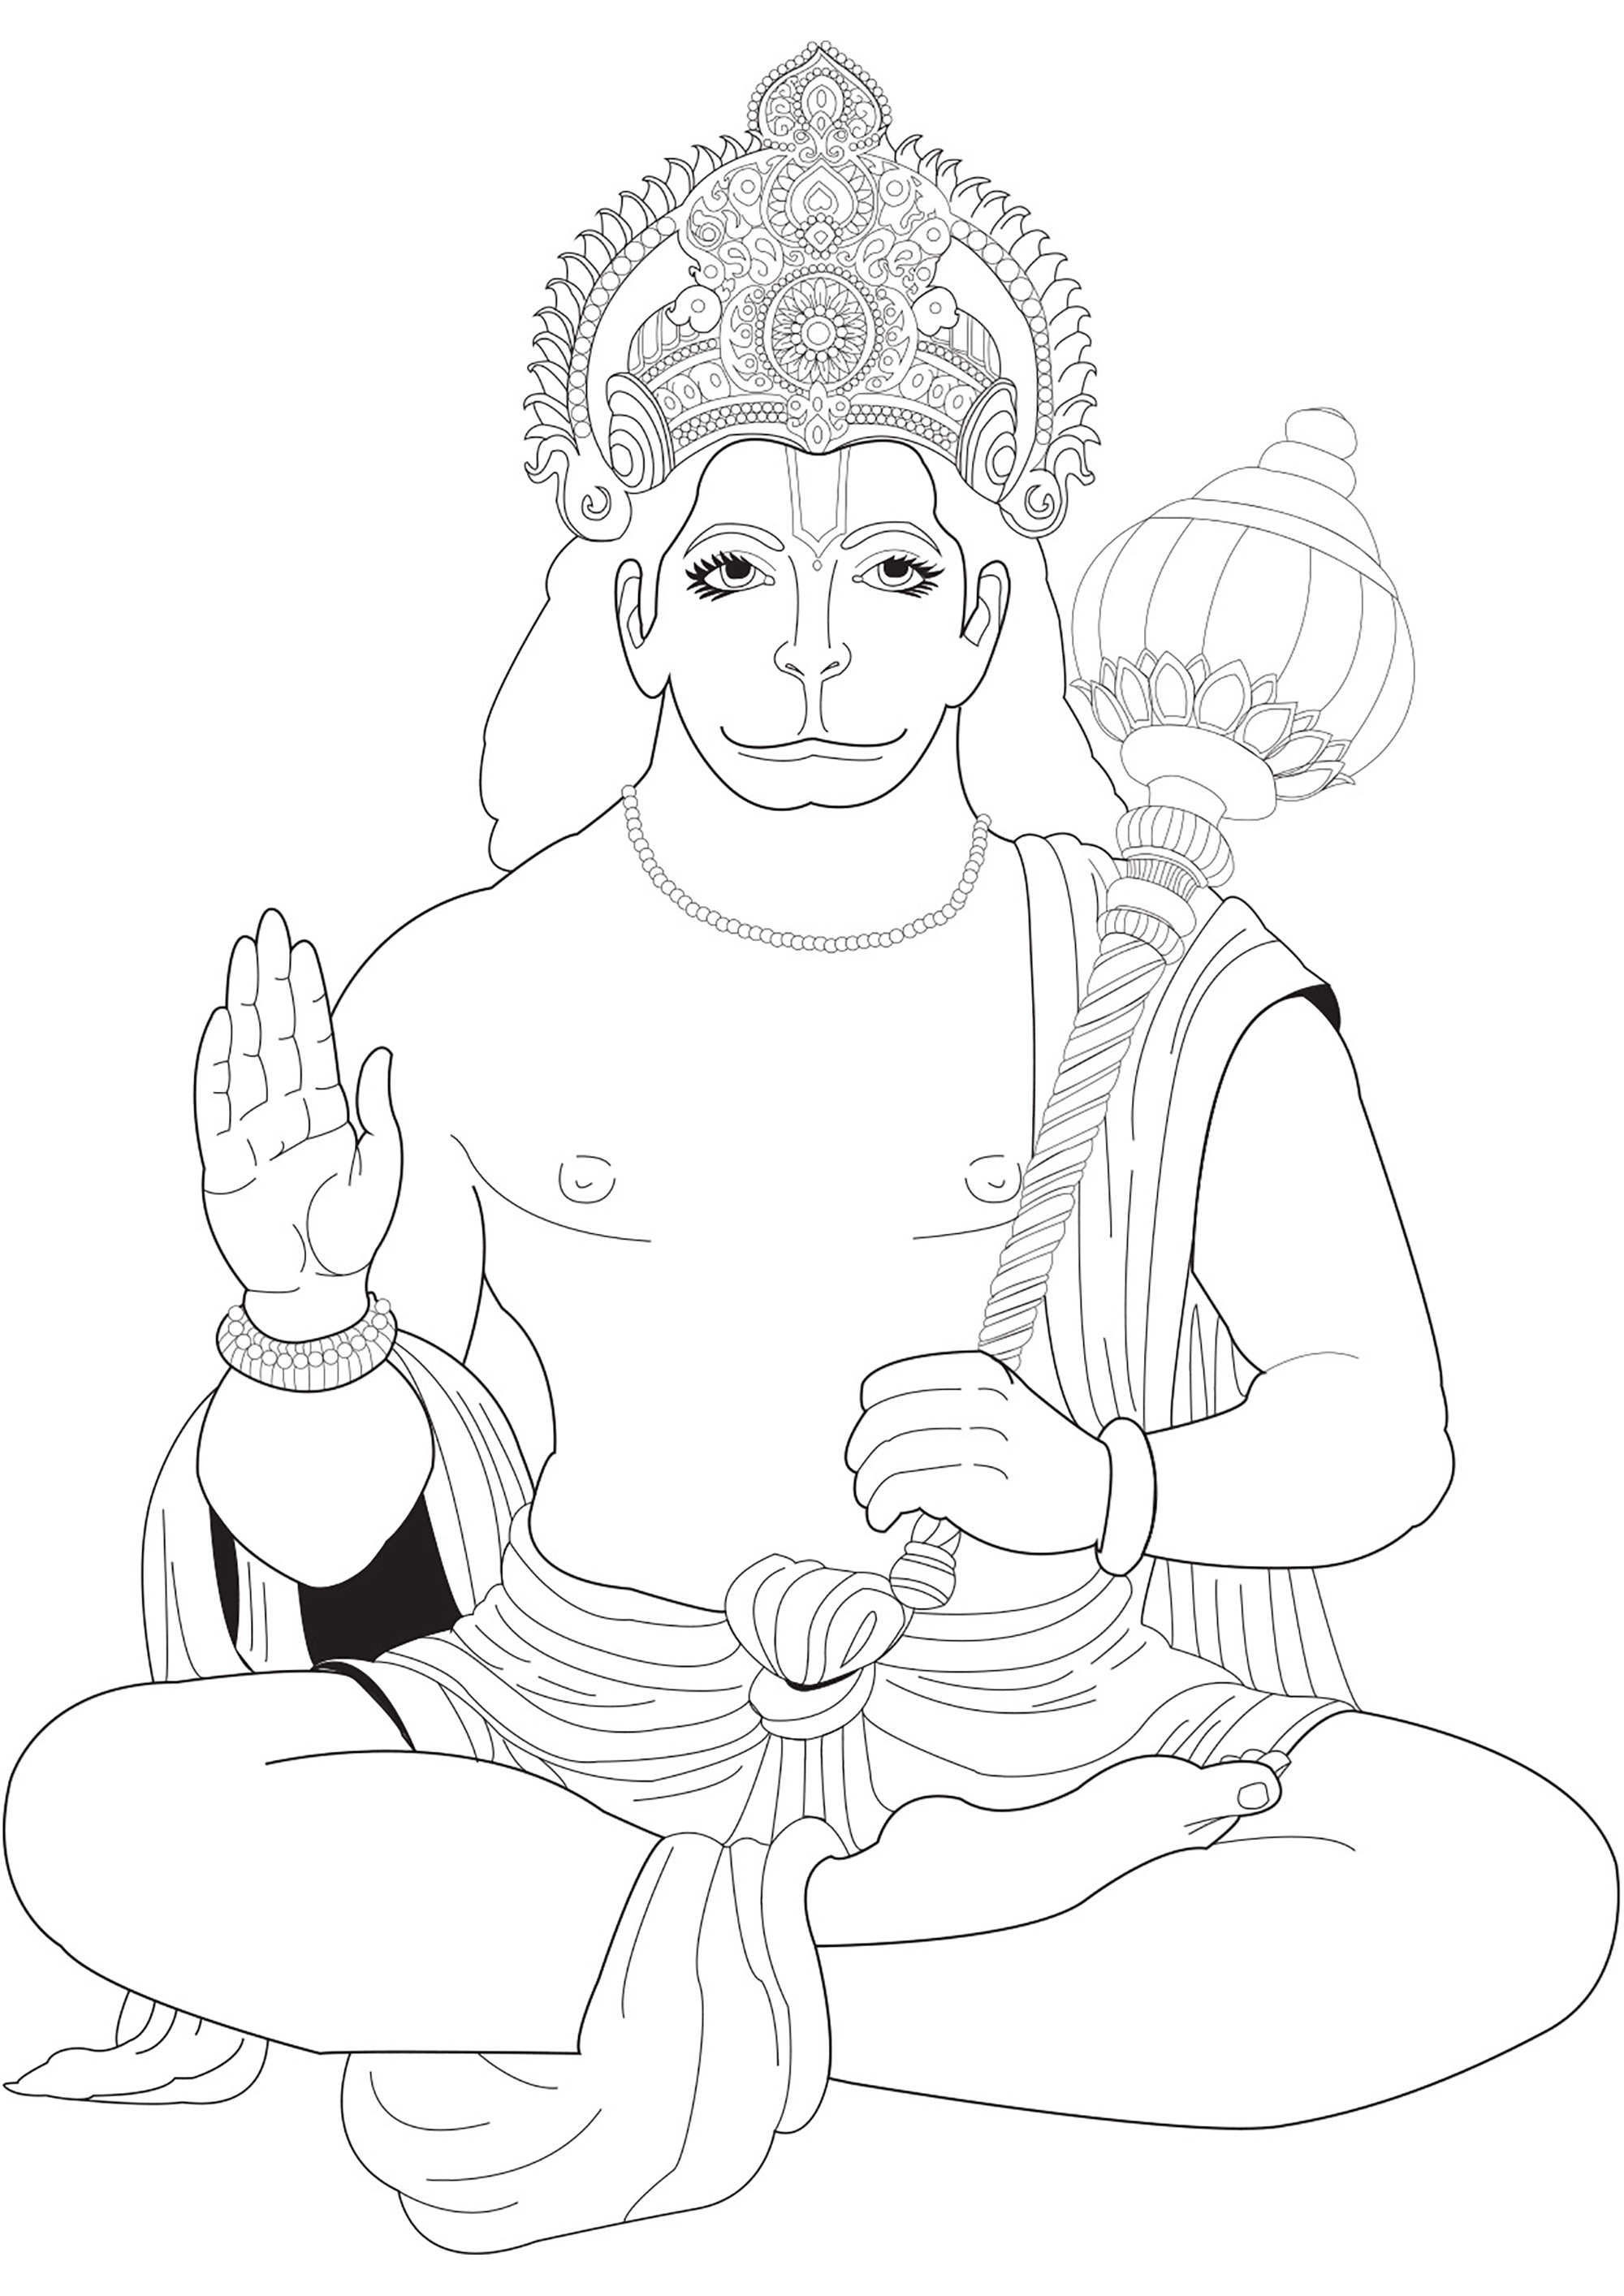 Dibujo de Hanuman para colorear. Hanuman es una figura venerada en la mitología hindú, considerado el dios mono y devoto discípulo del Señor Rama, celebrado por su extraordinaria fuerza e inquebrantable lealtad en la epopeya Ramayana.